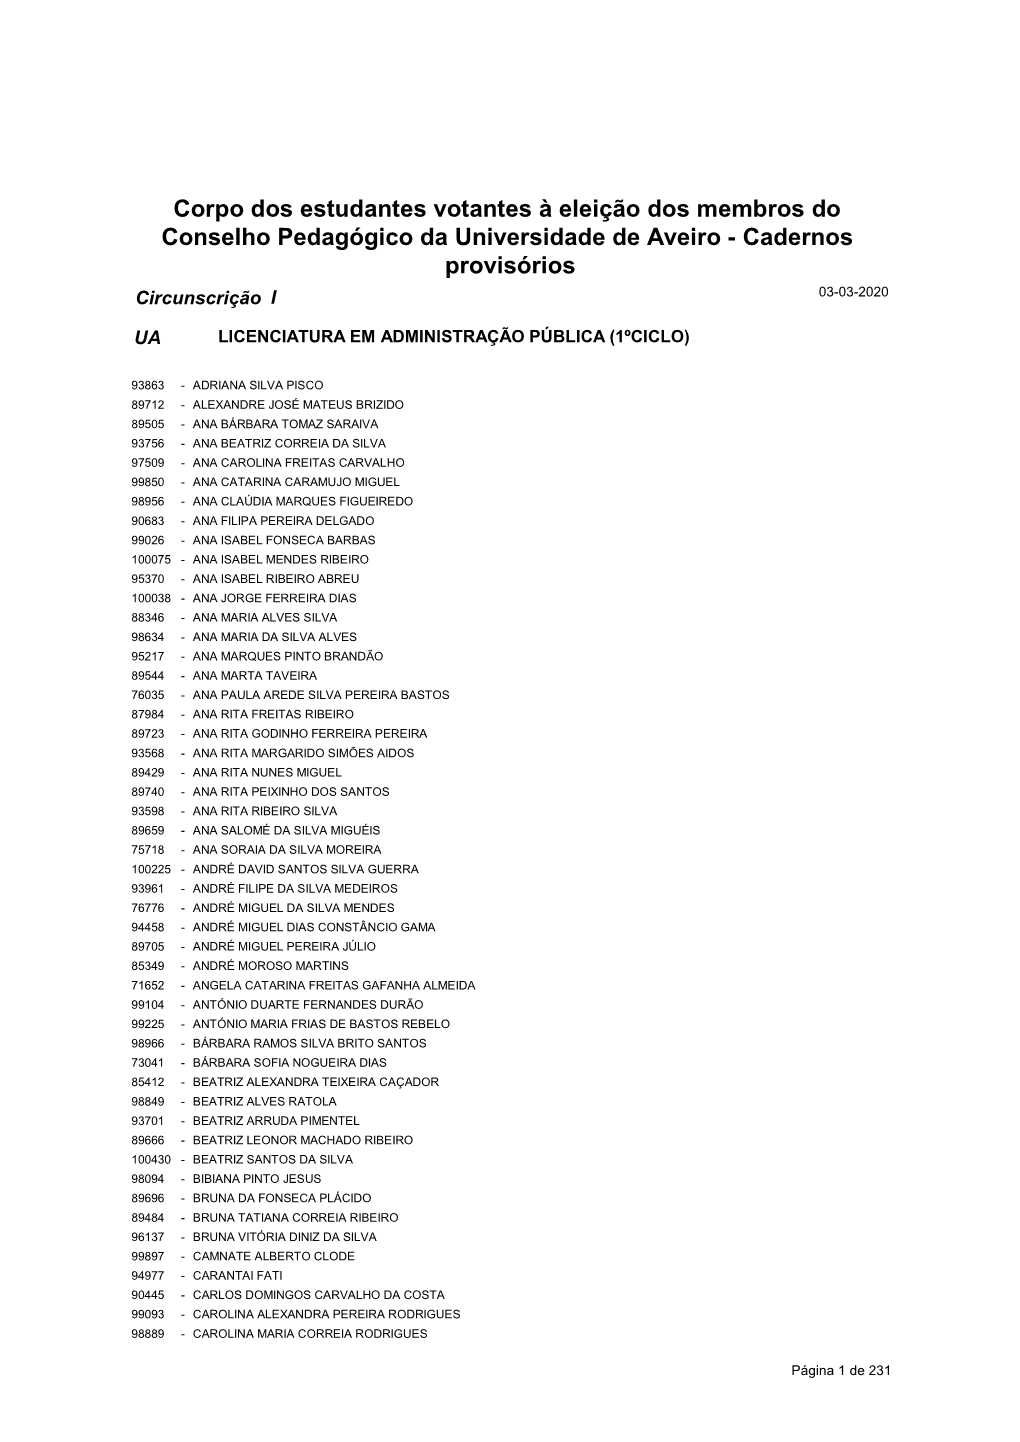 Corpo Dos Estudantes Votantes À Eleição Dos Membros Do Conselho Pedagógico Da Universidade De Aveiro - Cadernos Provisórios Circunscrição I 03-03-2020